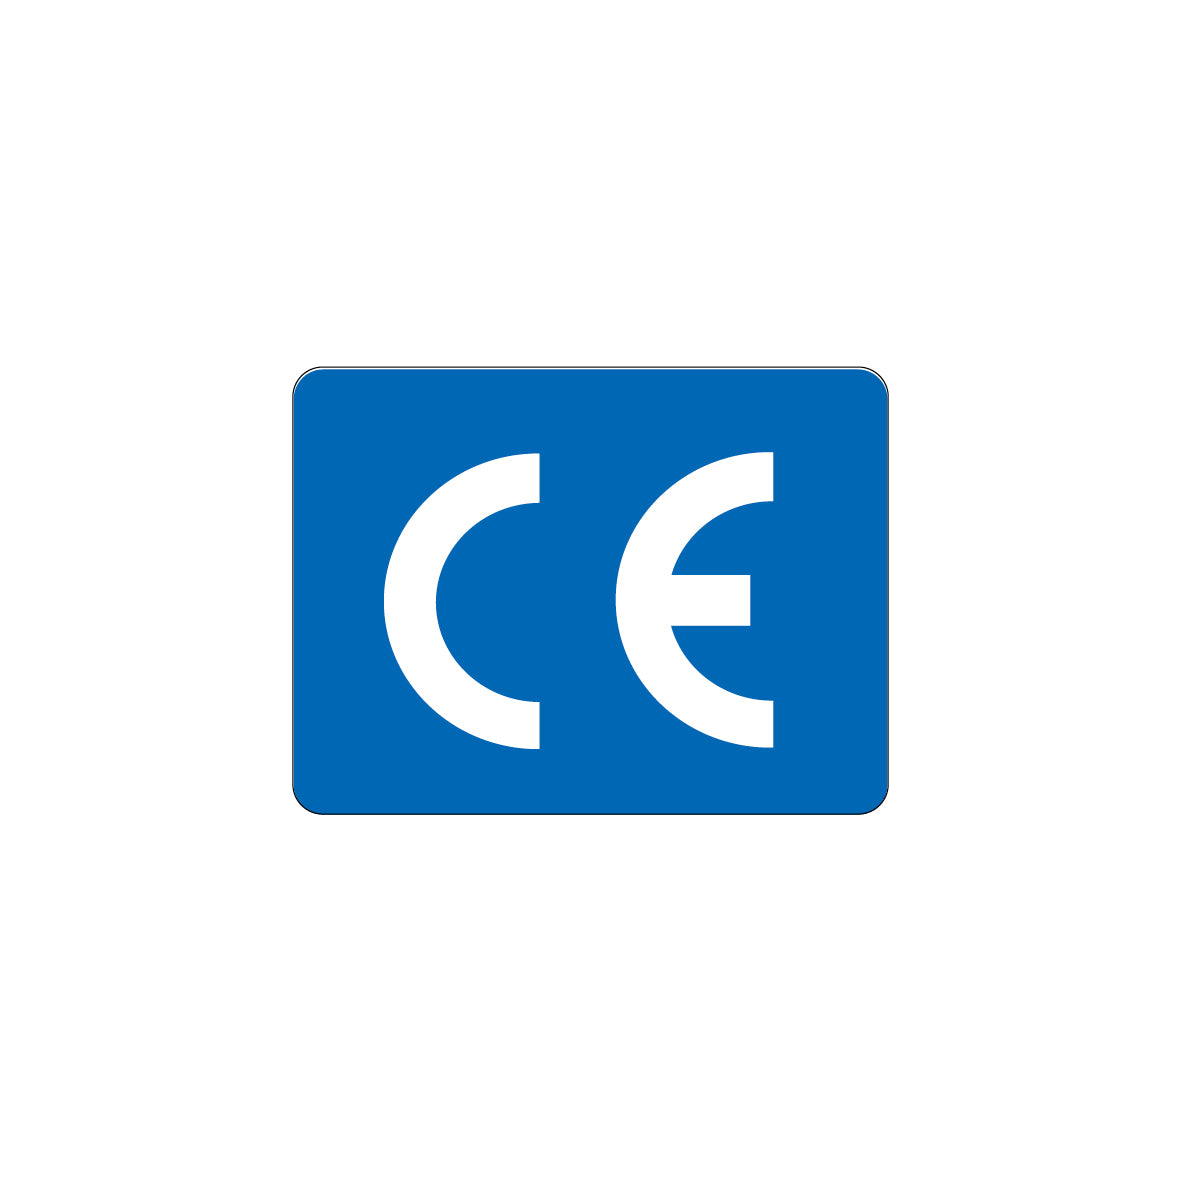 CE-Zeichen, 4.0061, 20 x 15 mm, Schrifthöhe 10 mm, FO, auf Bogen = 25 Stk., blau/weiss, Einheit 100 Stk.